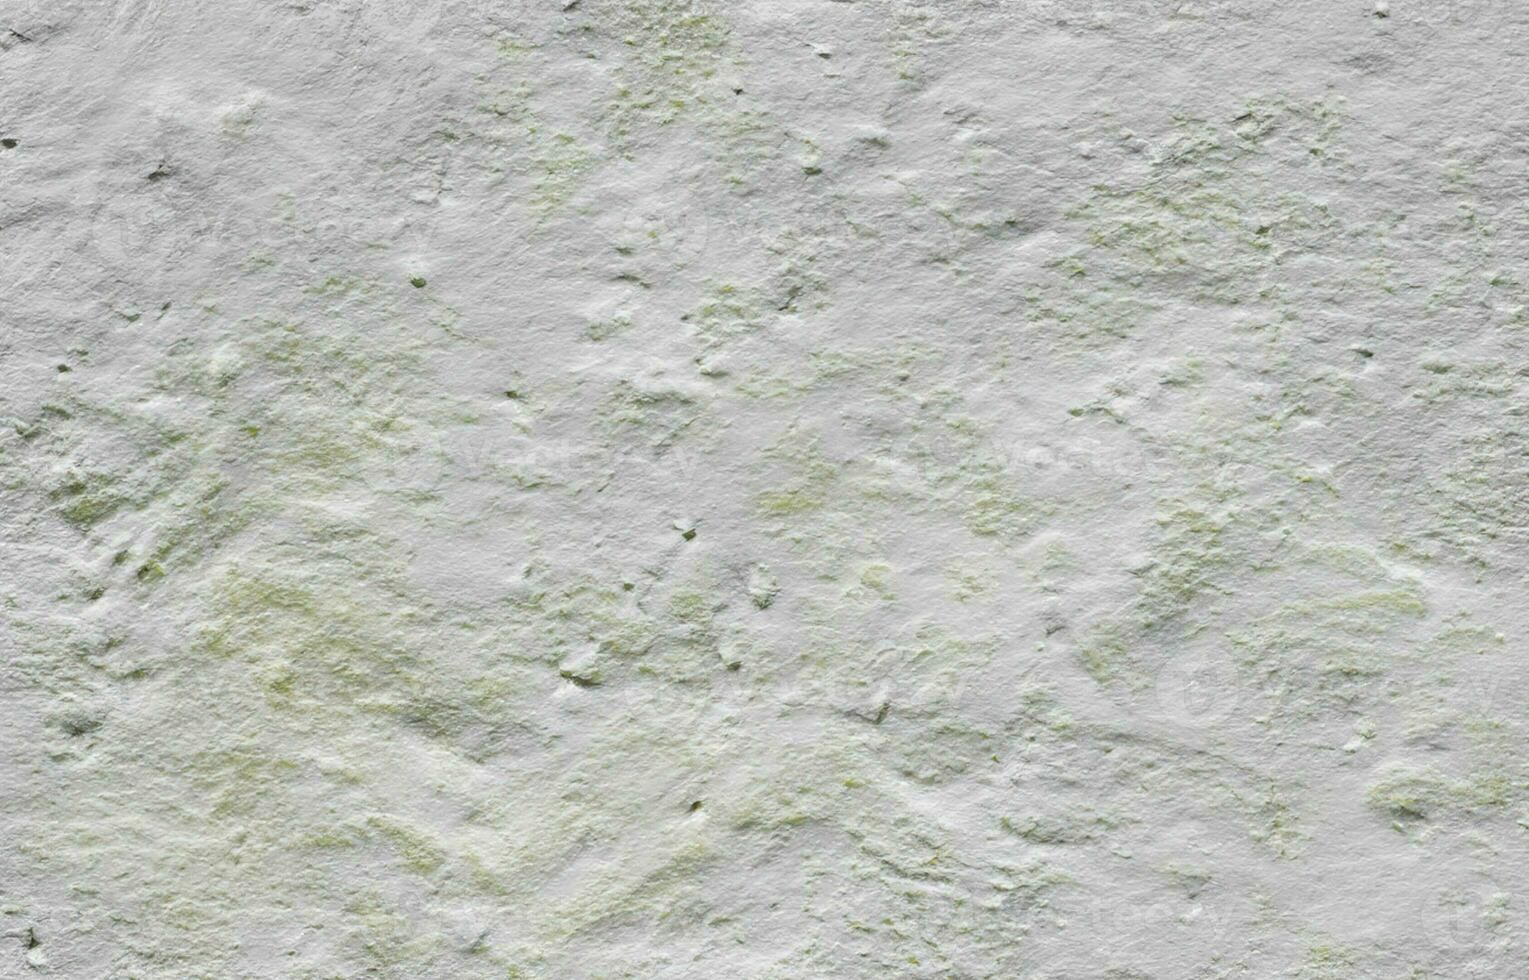 wit geschilderd muur structuur achtergrond foto